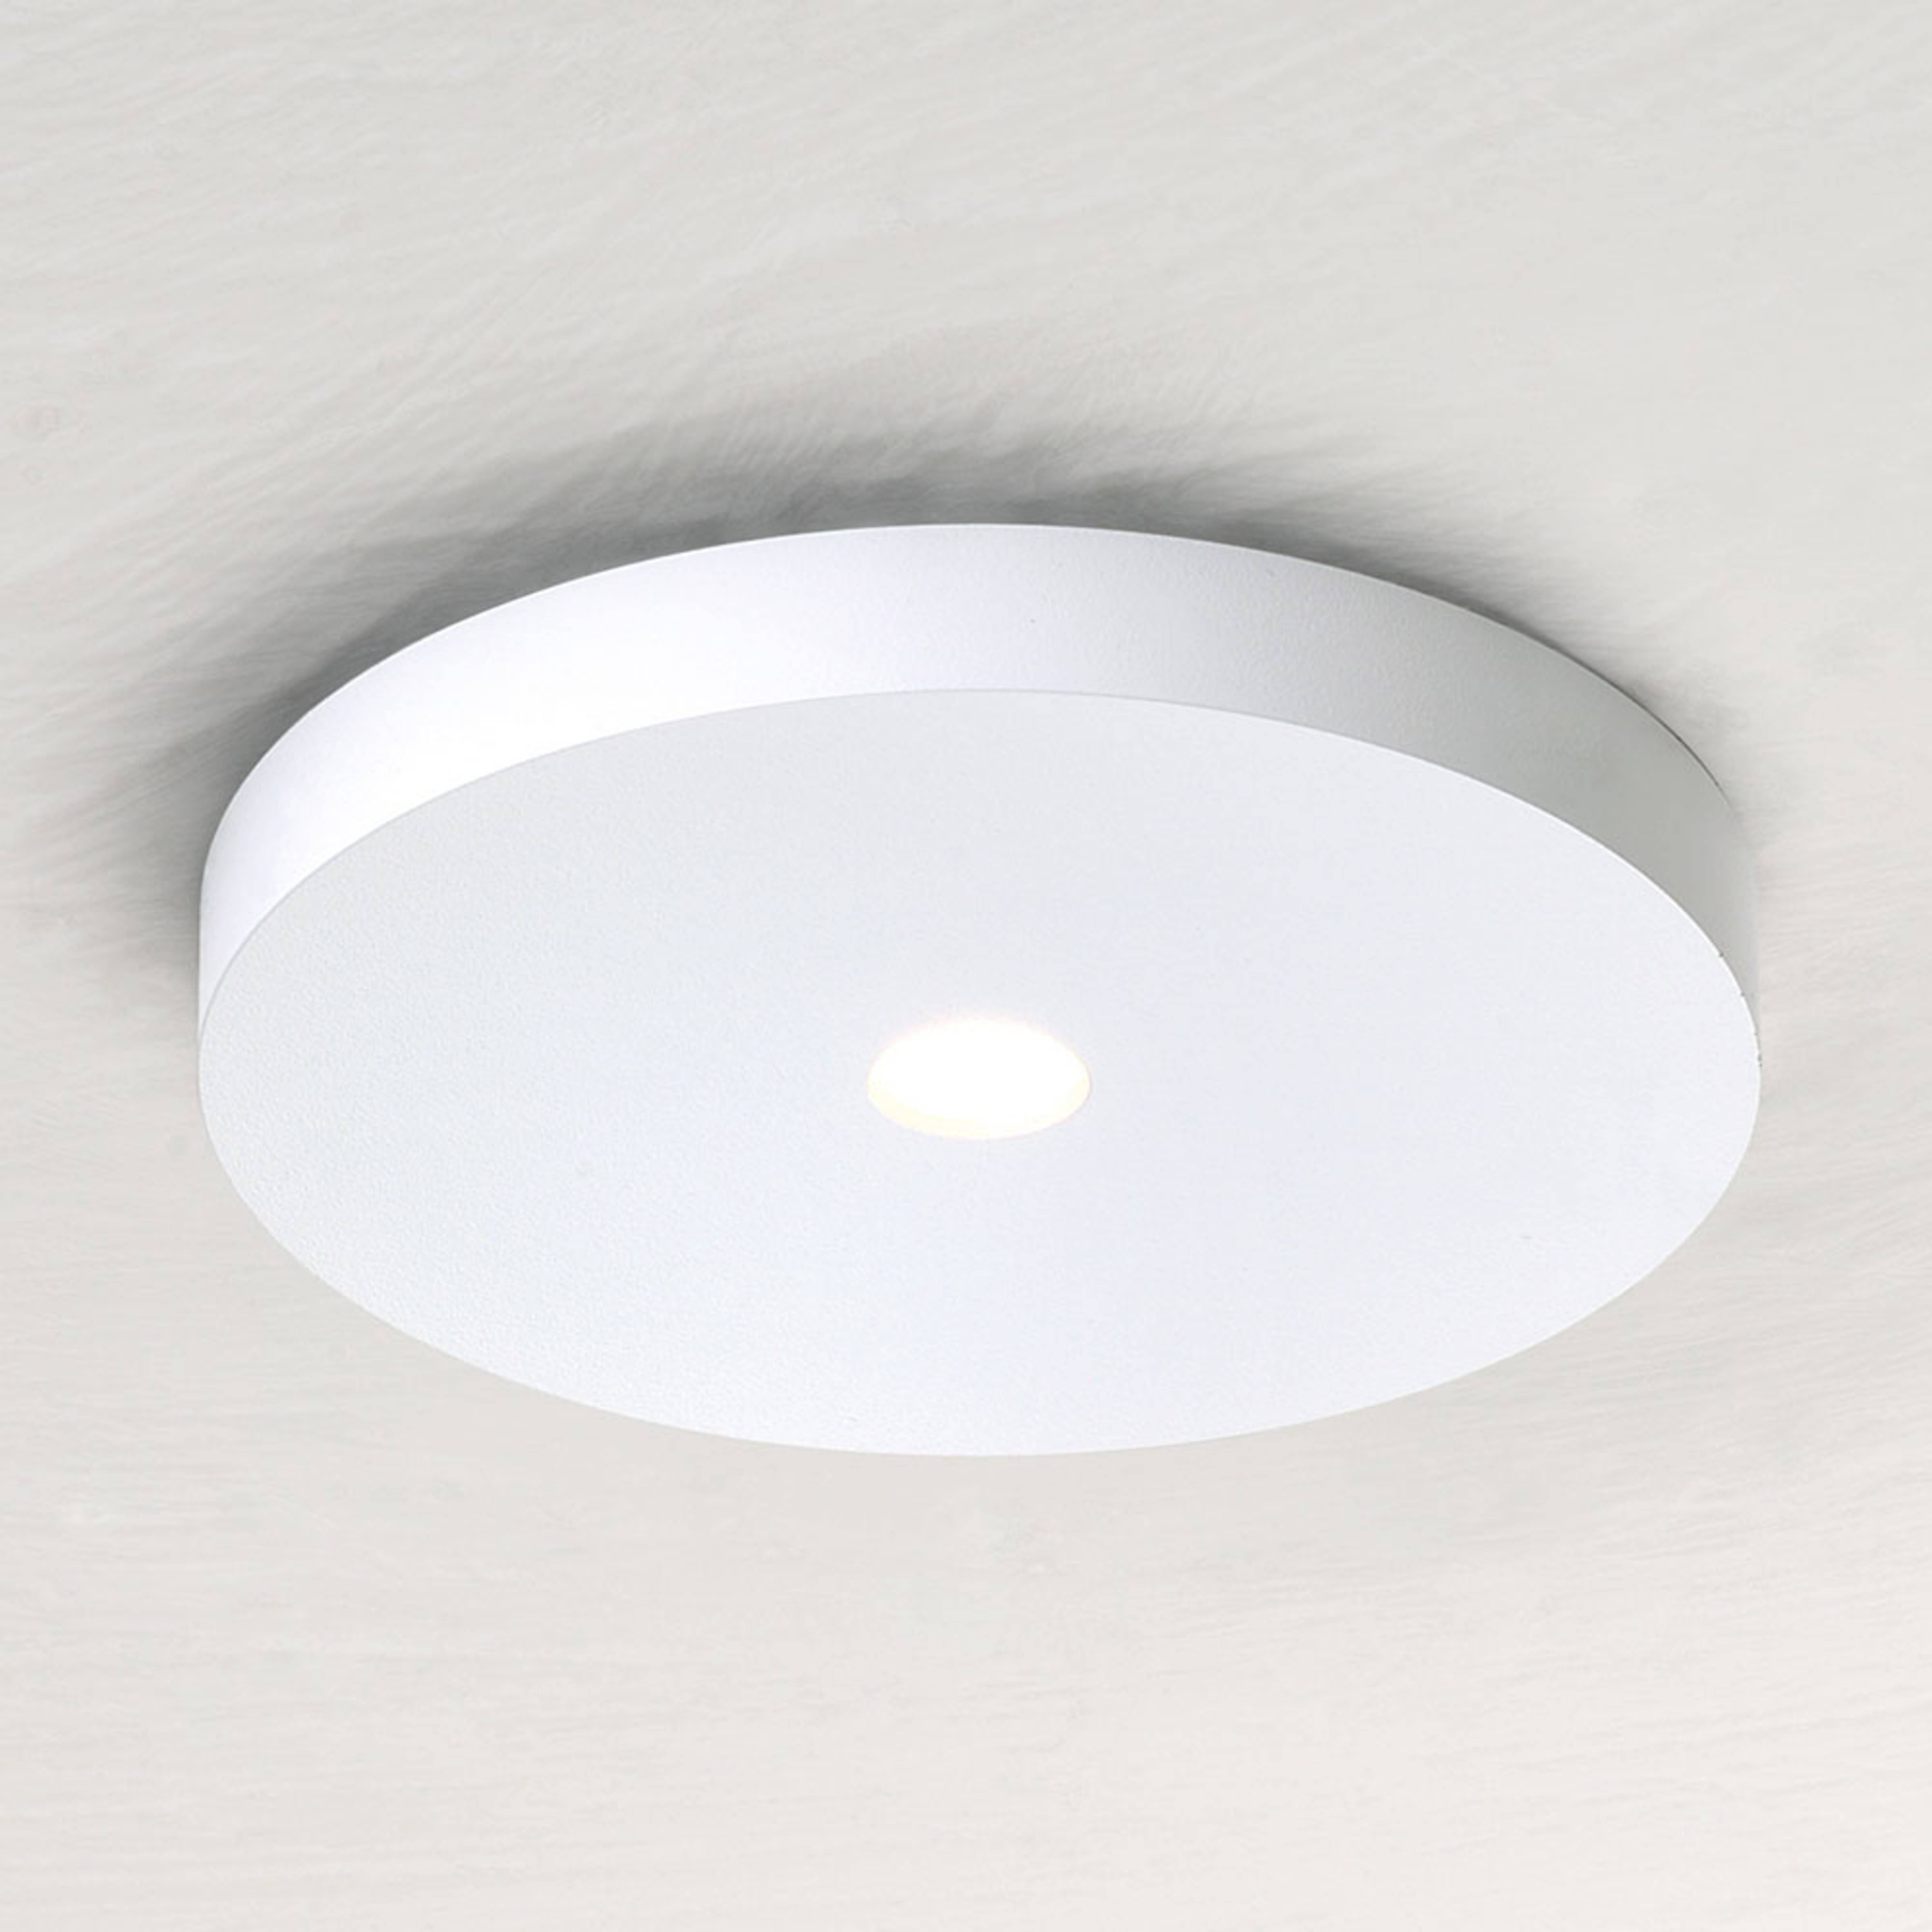 Bopp Close faretto LED da soffitto bianco